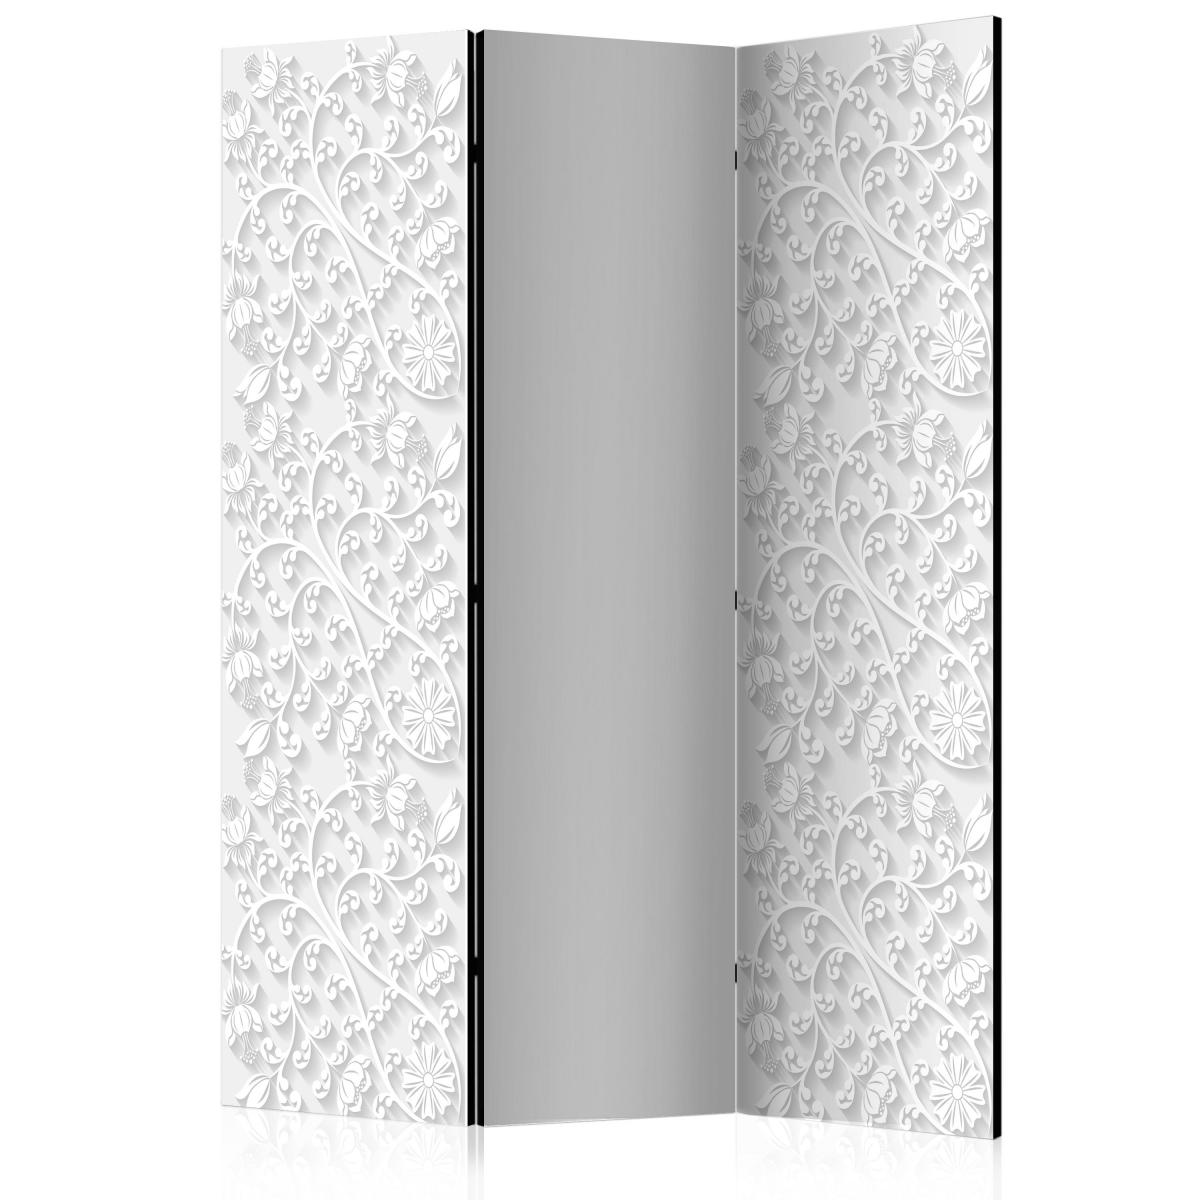 Bimago - Paravent 3 volets - Room divider – Floral pattern I - Décoration, image, art | 135x172 cm | - Cloisons